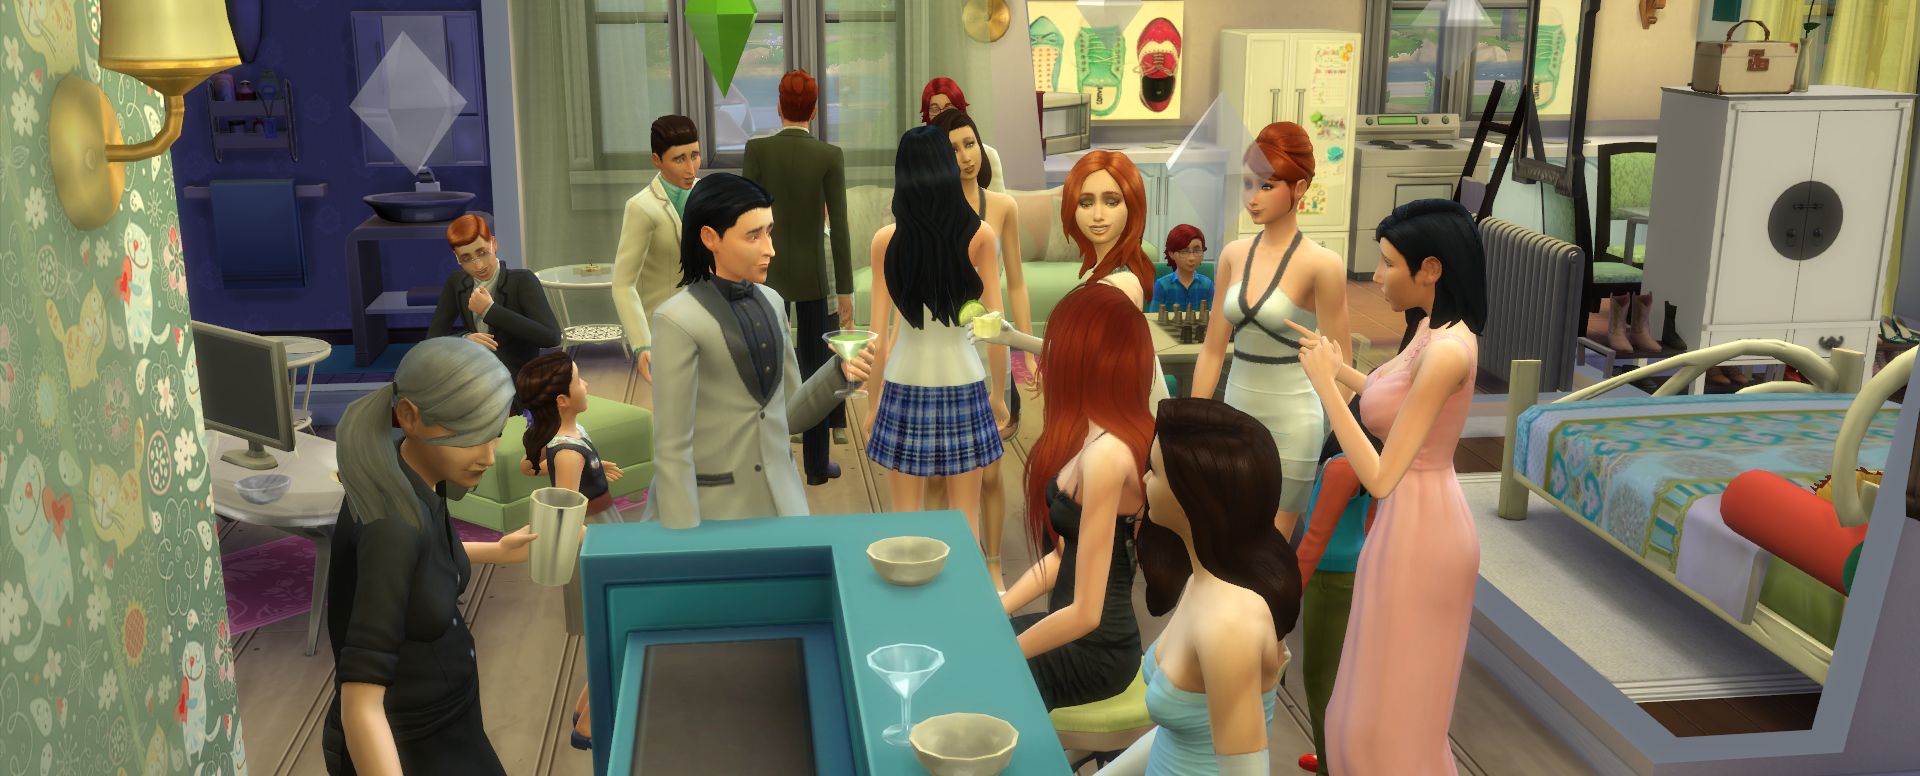 Обзор навыка траволечения в игровом наборе The Sims 4: В поход!»